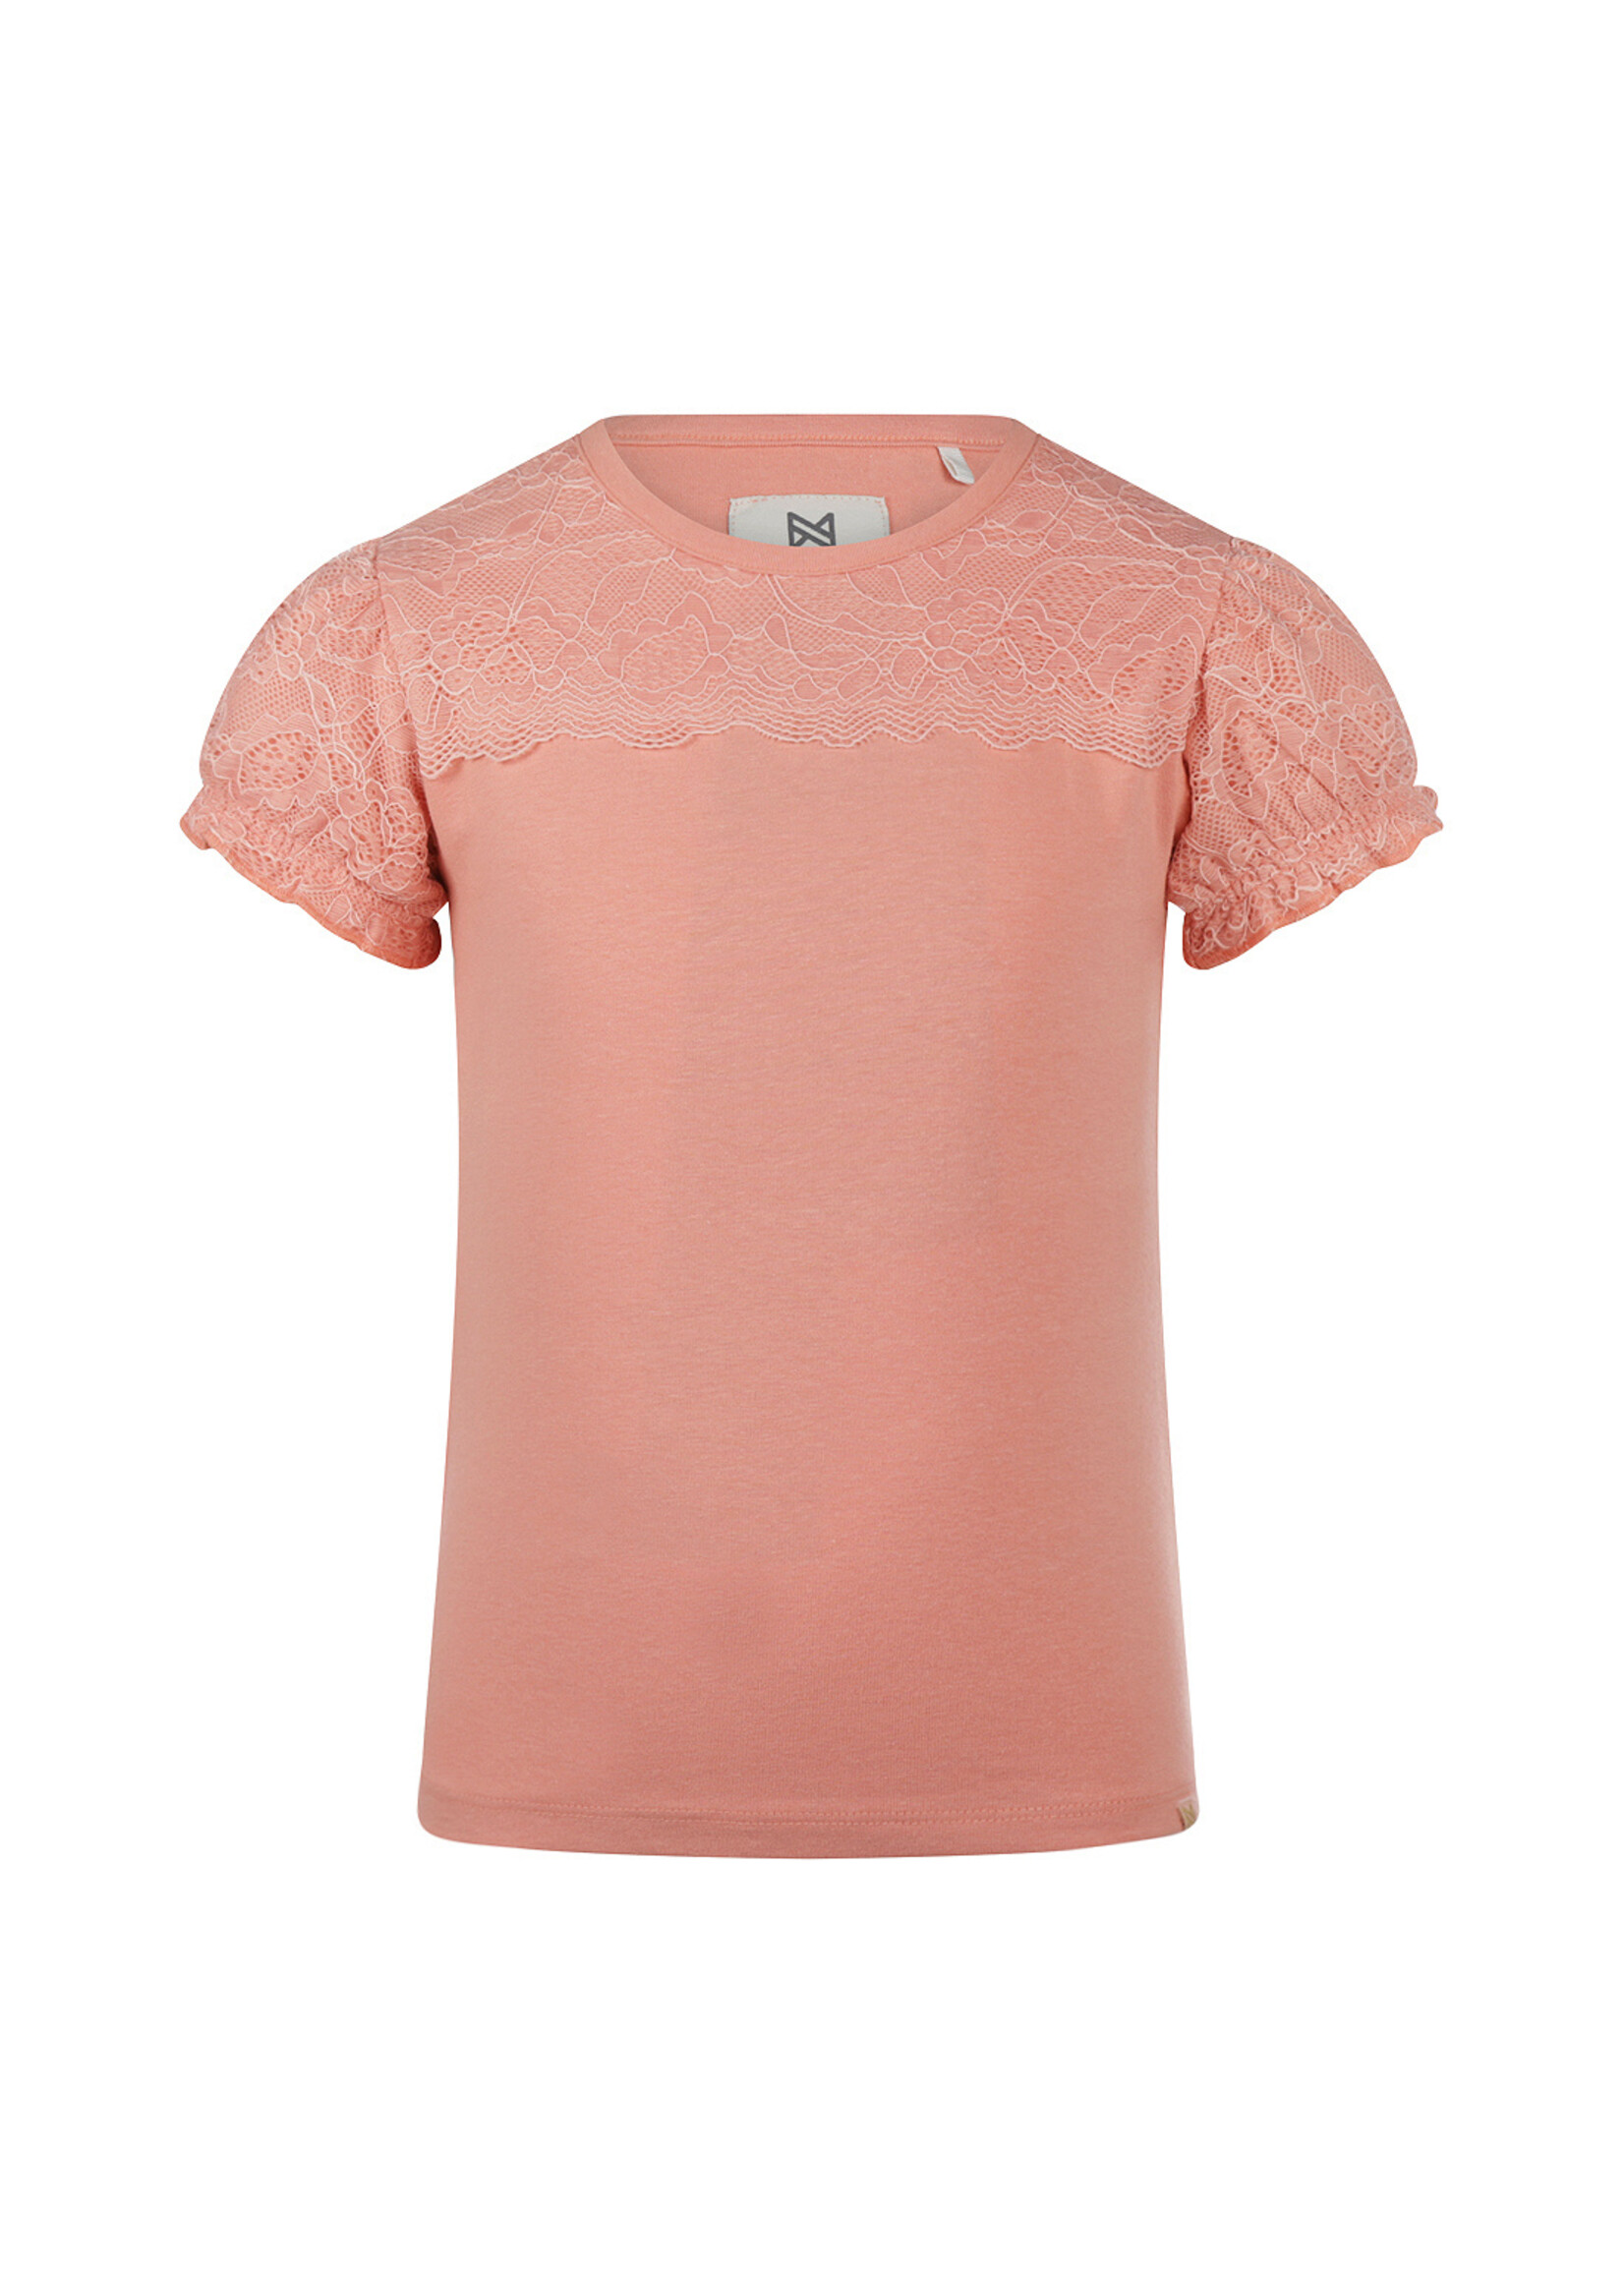 Koko Noko T-shirt ss Coral pink